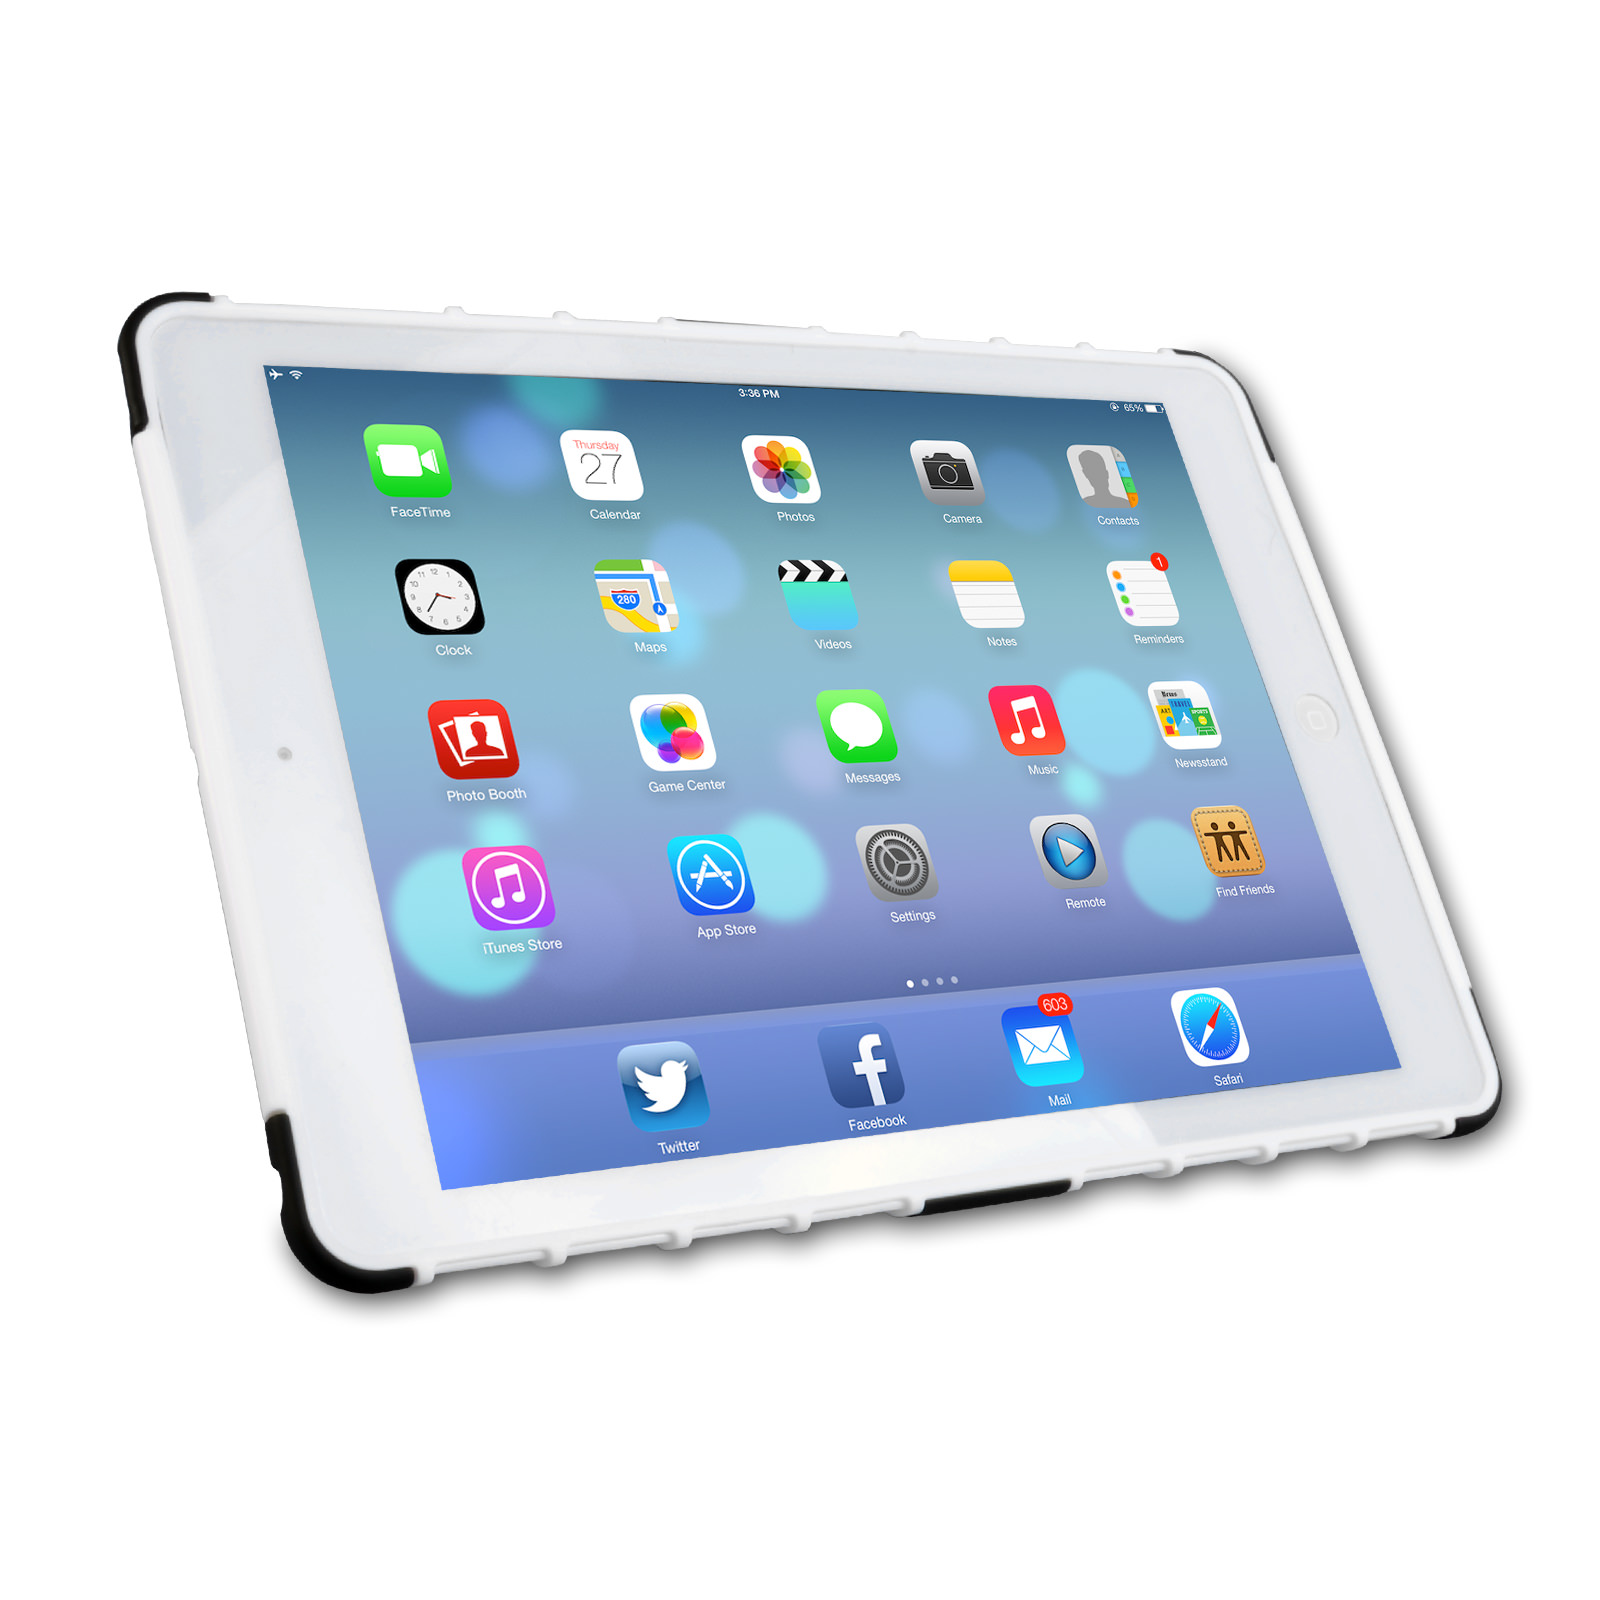 Caseflex iPad 2, 3, 4 Tough Stand Cover - White